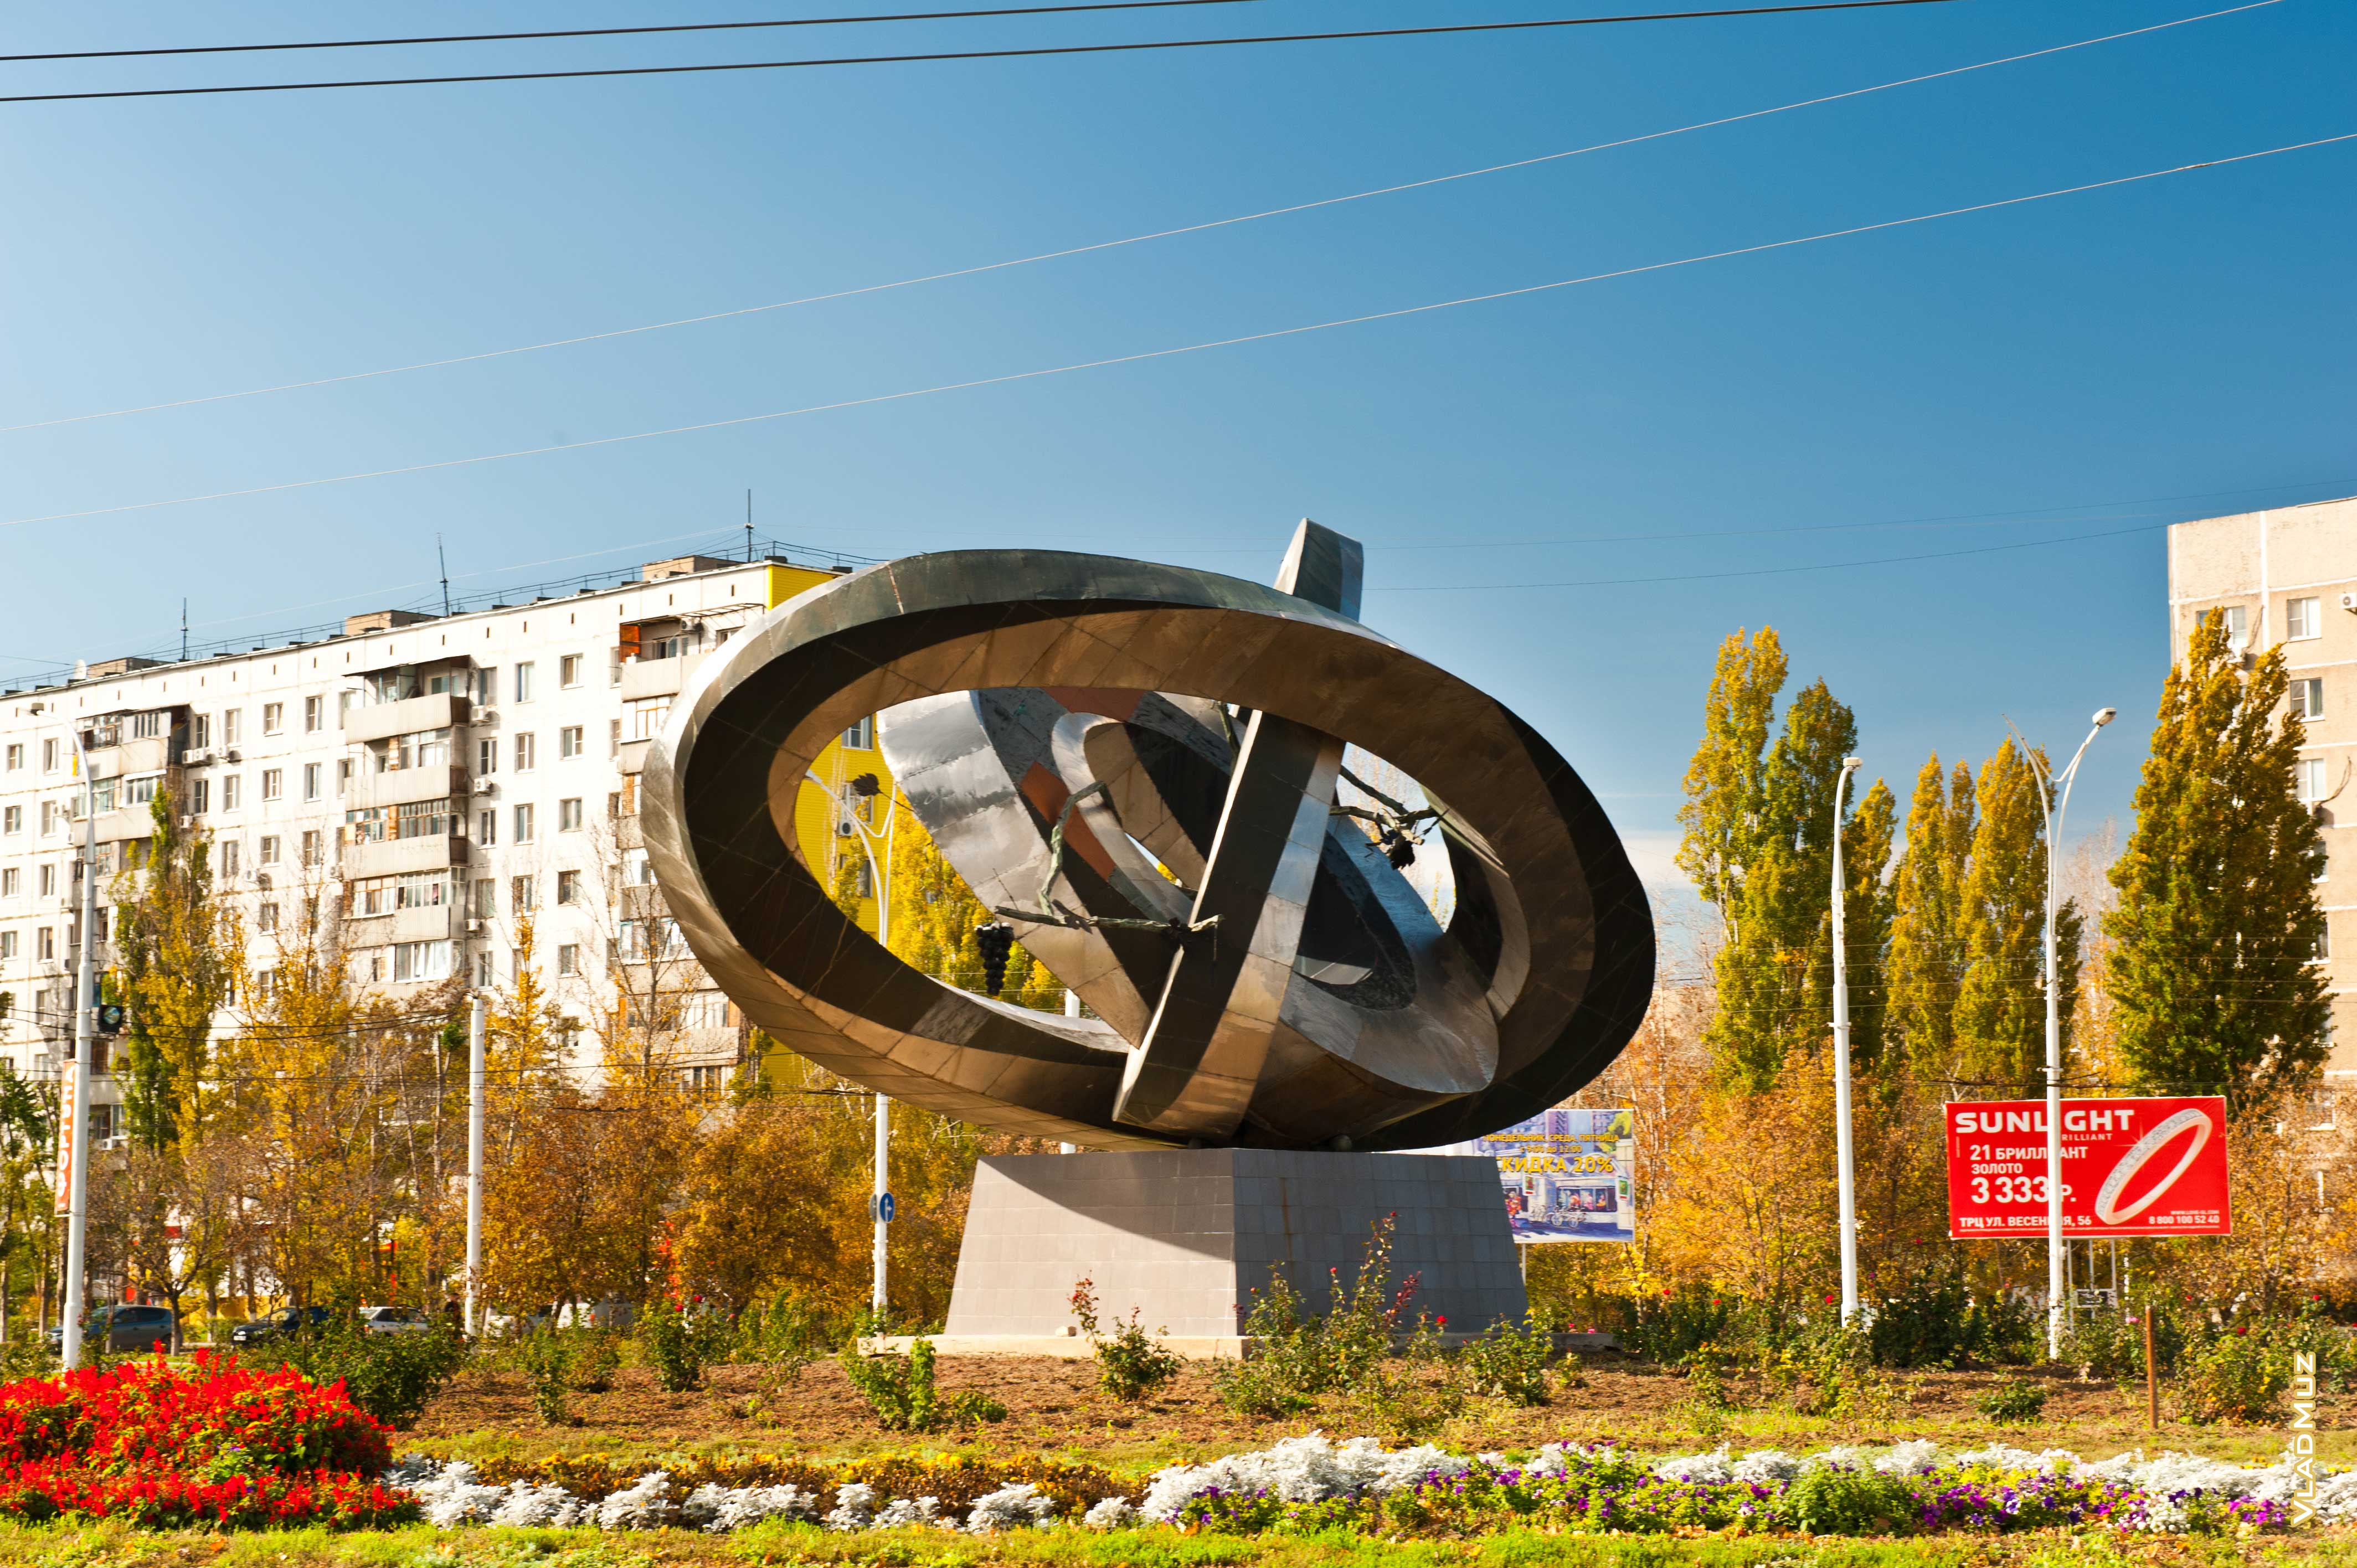 город волгодонск ростовской области фото